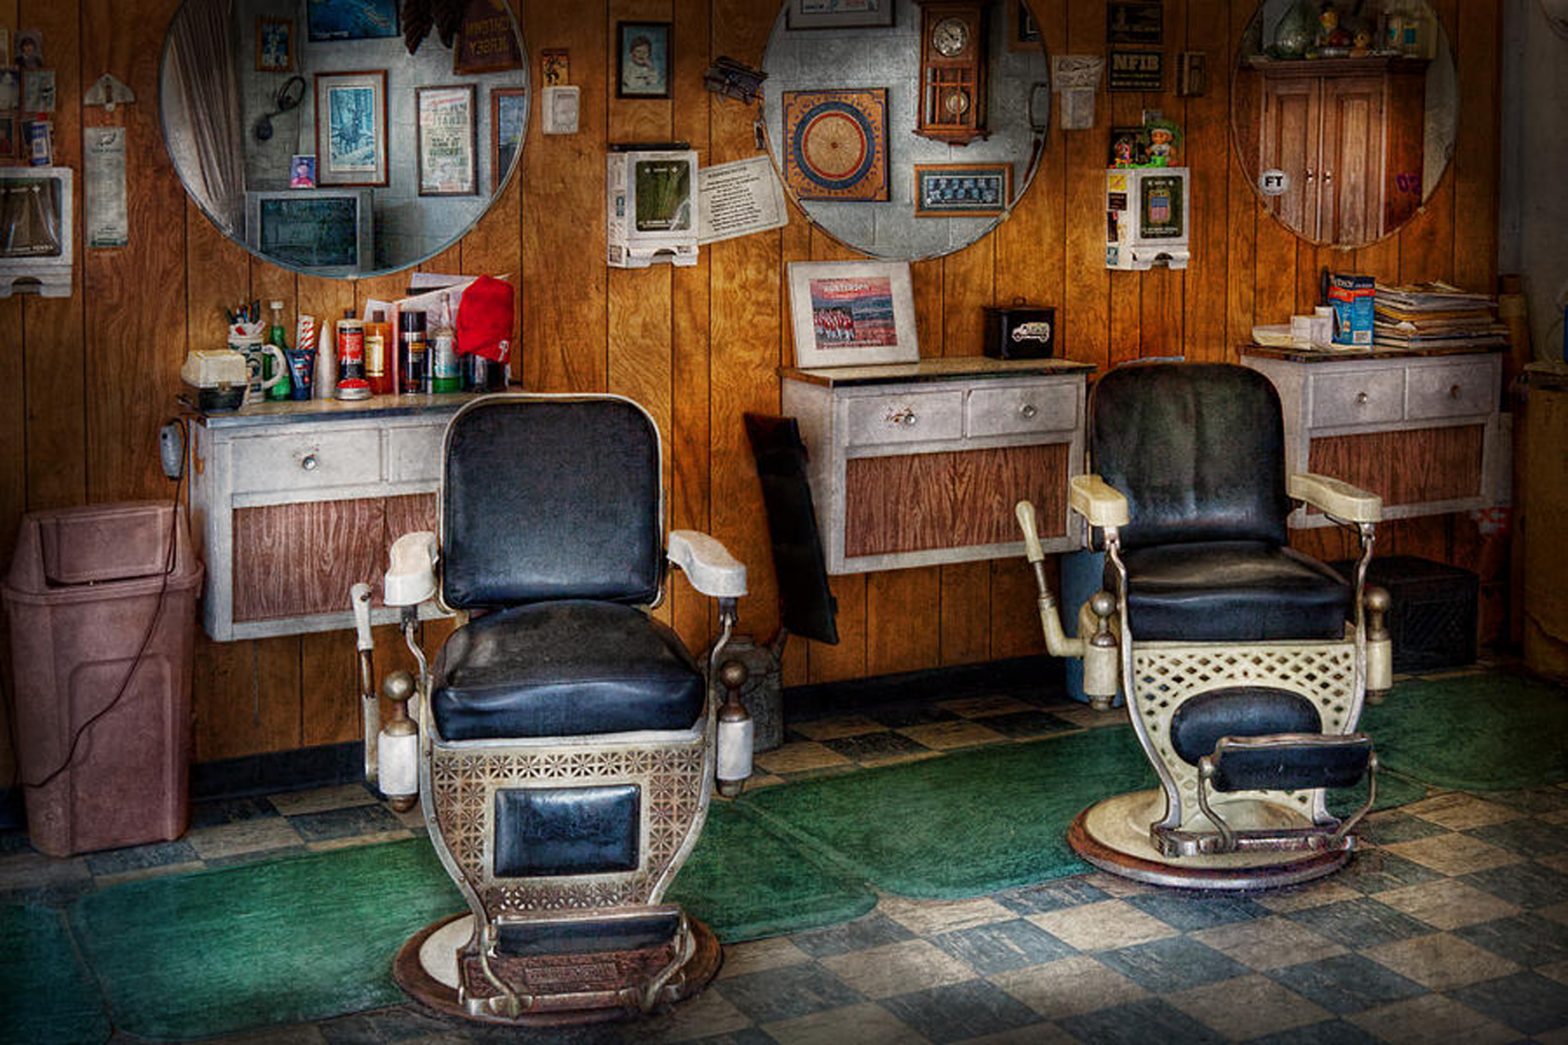 Sulla sedia del barbiere